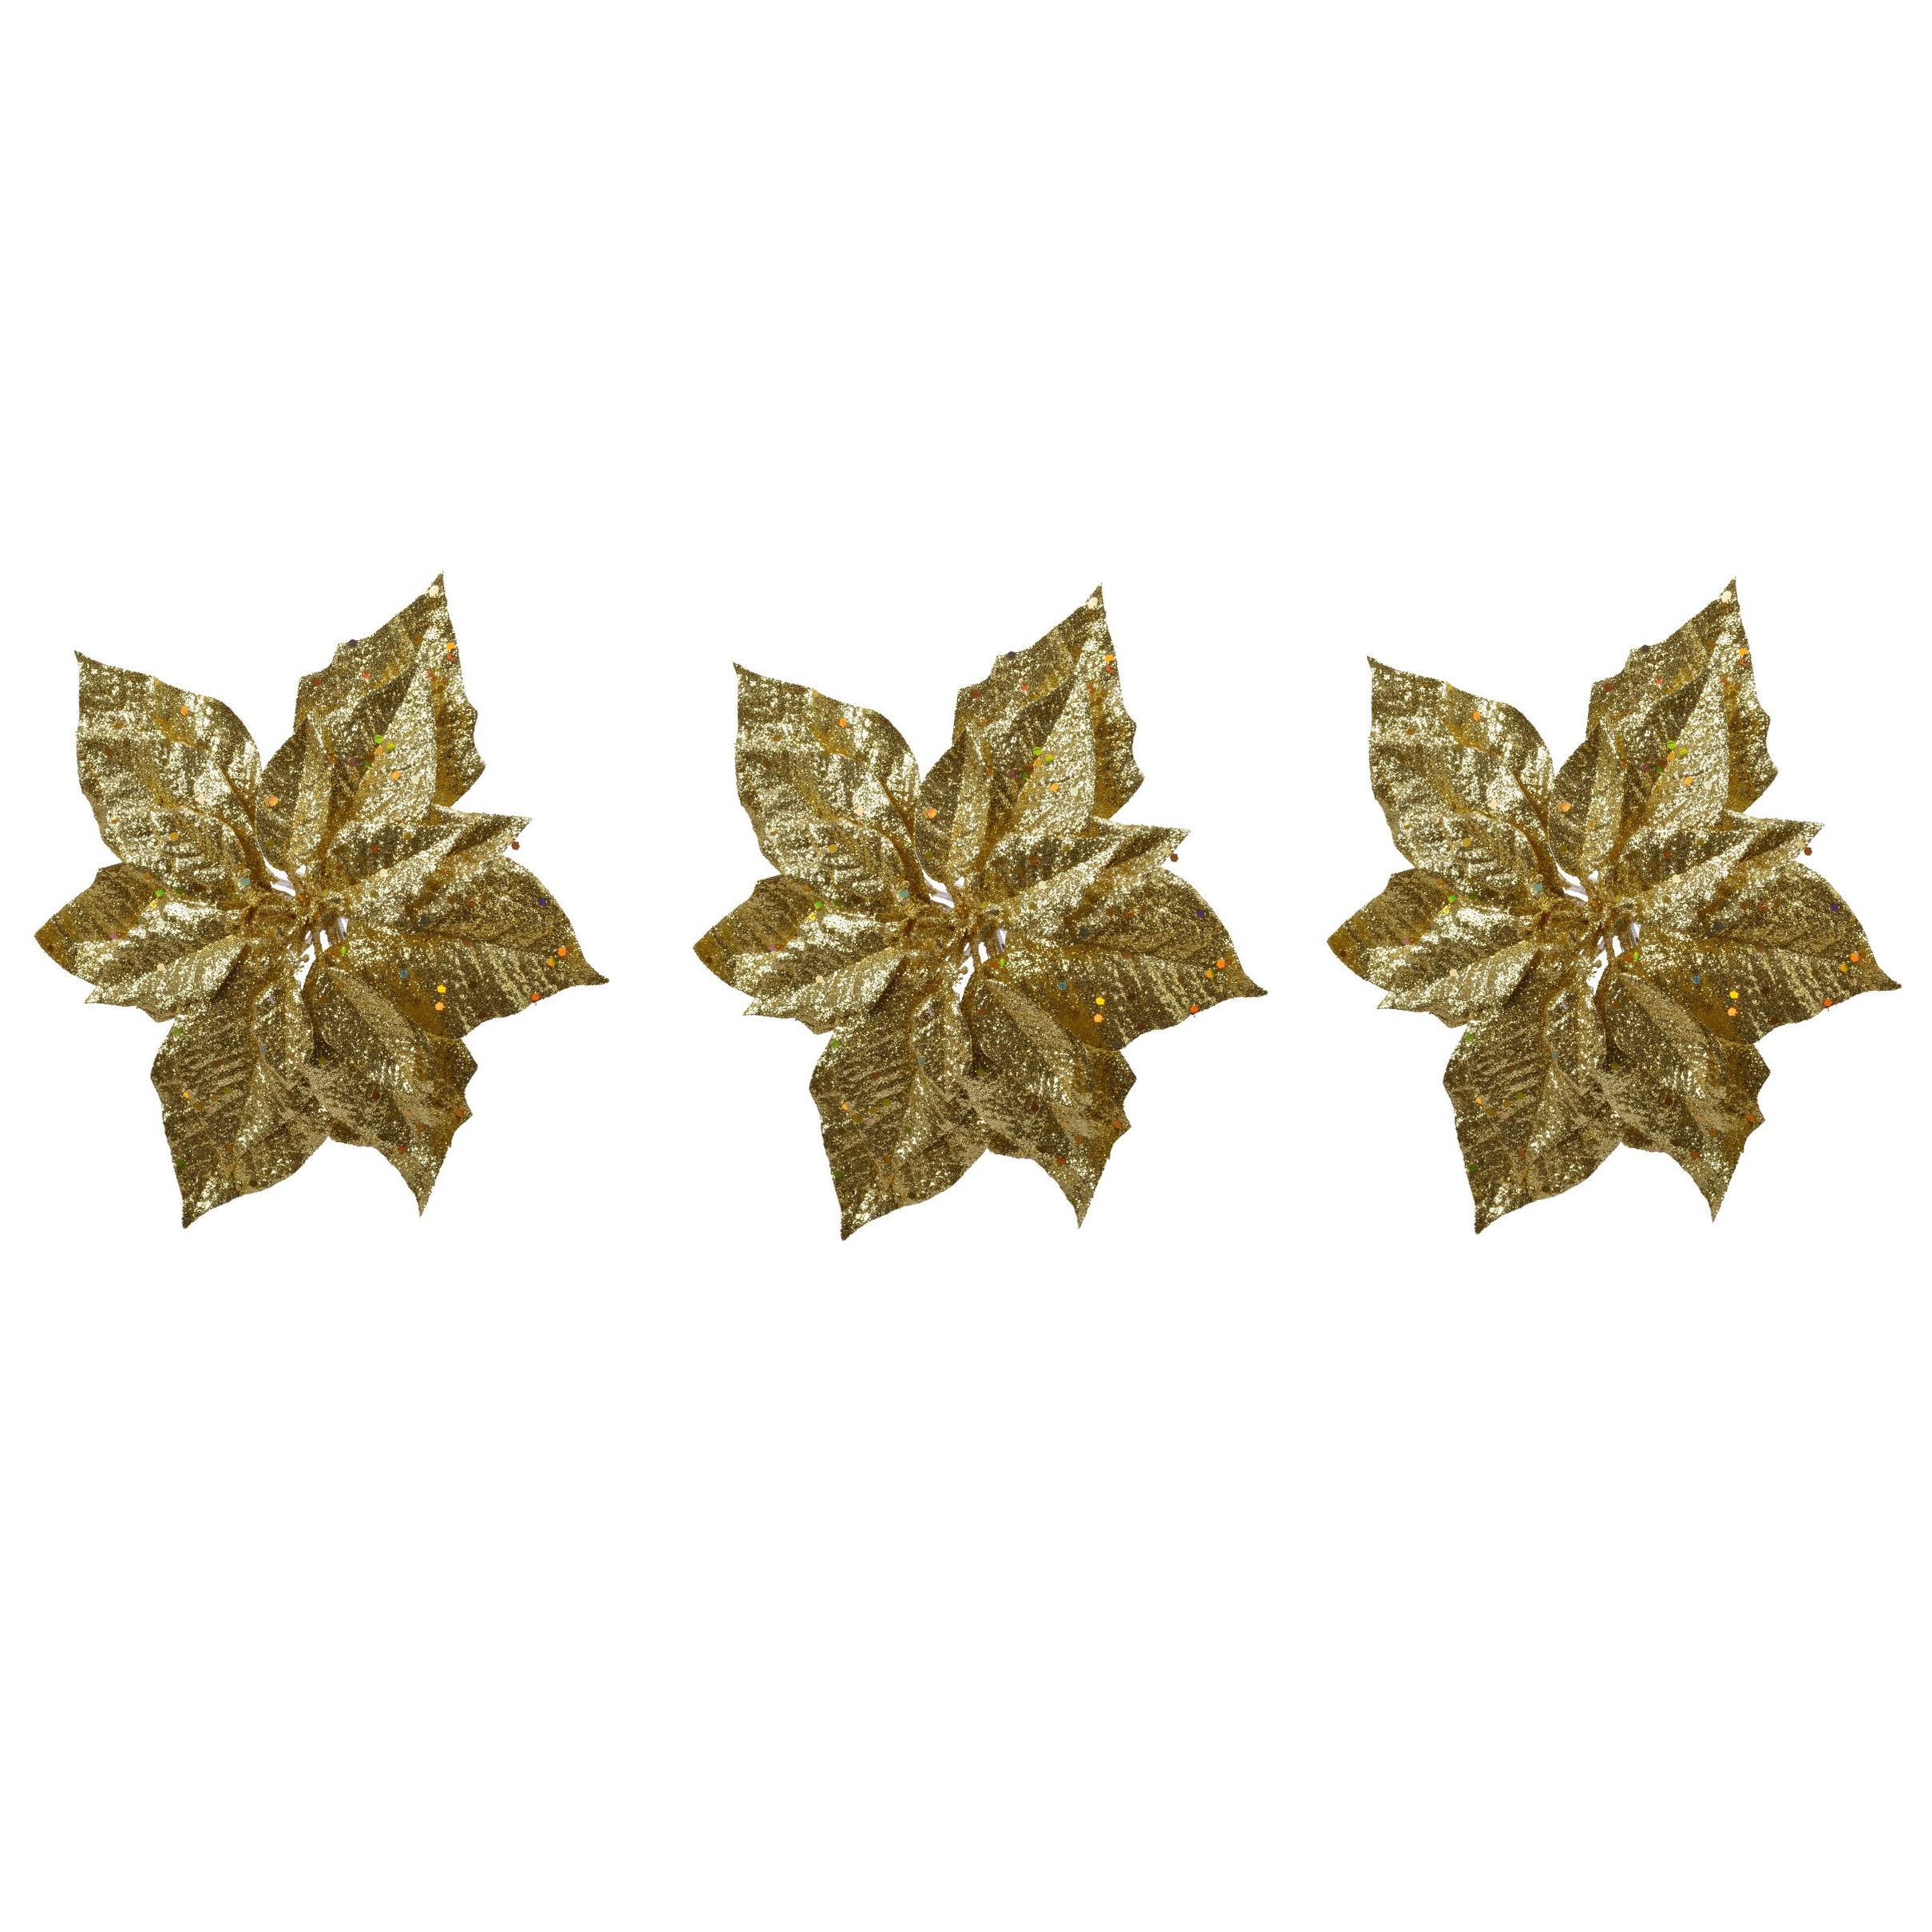 4x stuks decoratie bloemen kerstster goud glitter op clip 23 cm